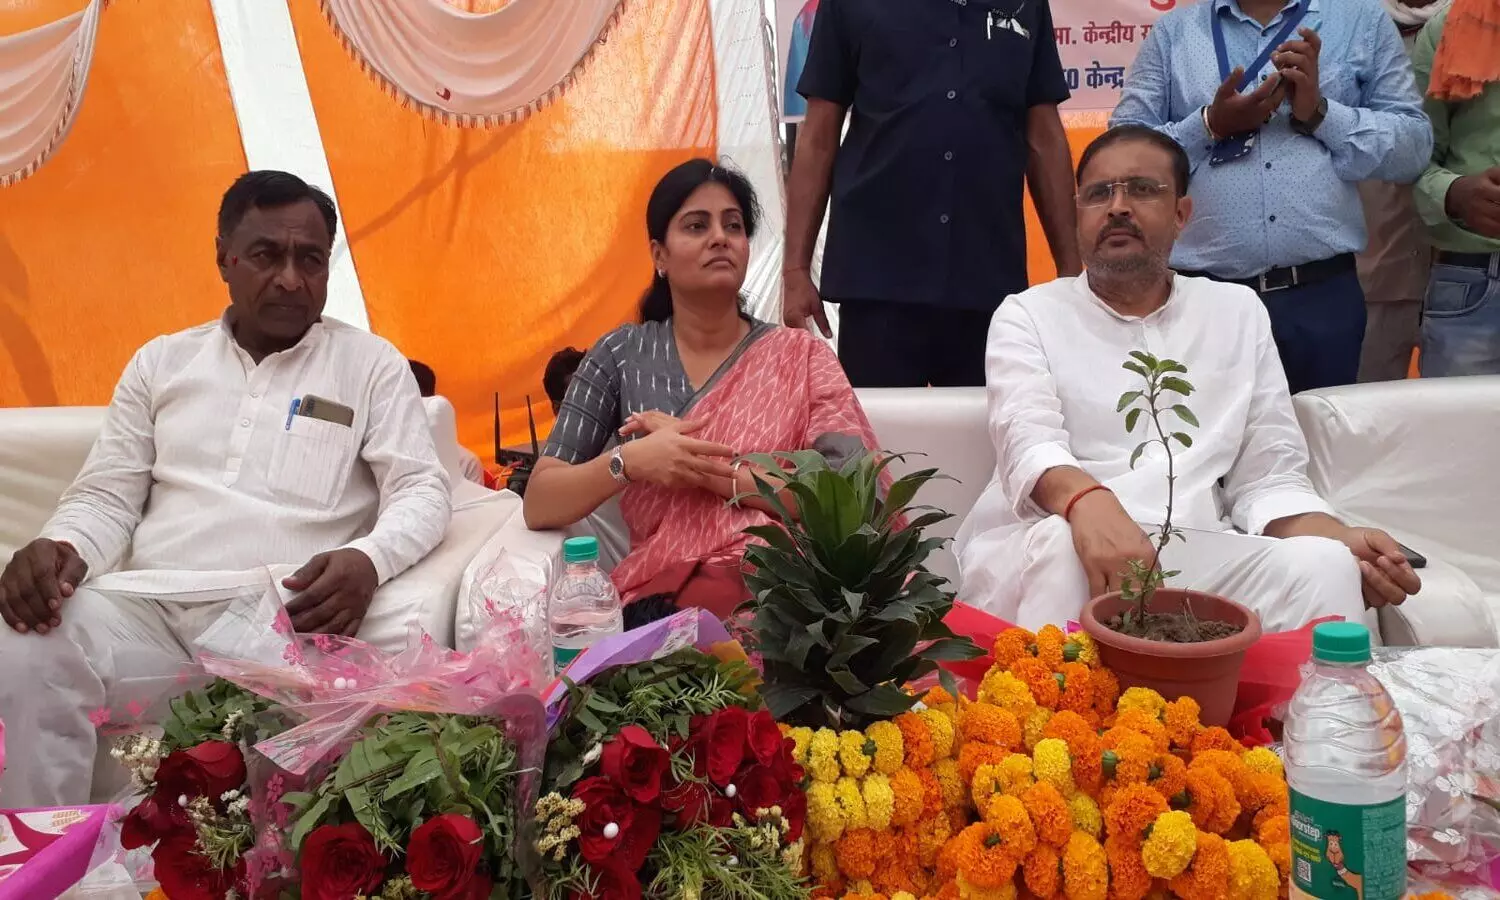 Swasthya Mela in UP: मिर्जापुर में स्वास्थ्य मेला का हुआ आयोजन, अनुप्रिया पटेल बोलीं- सरकार की मंशा, सब लोग रहें स्वस्थ